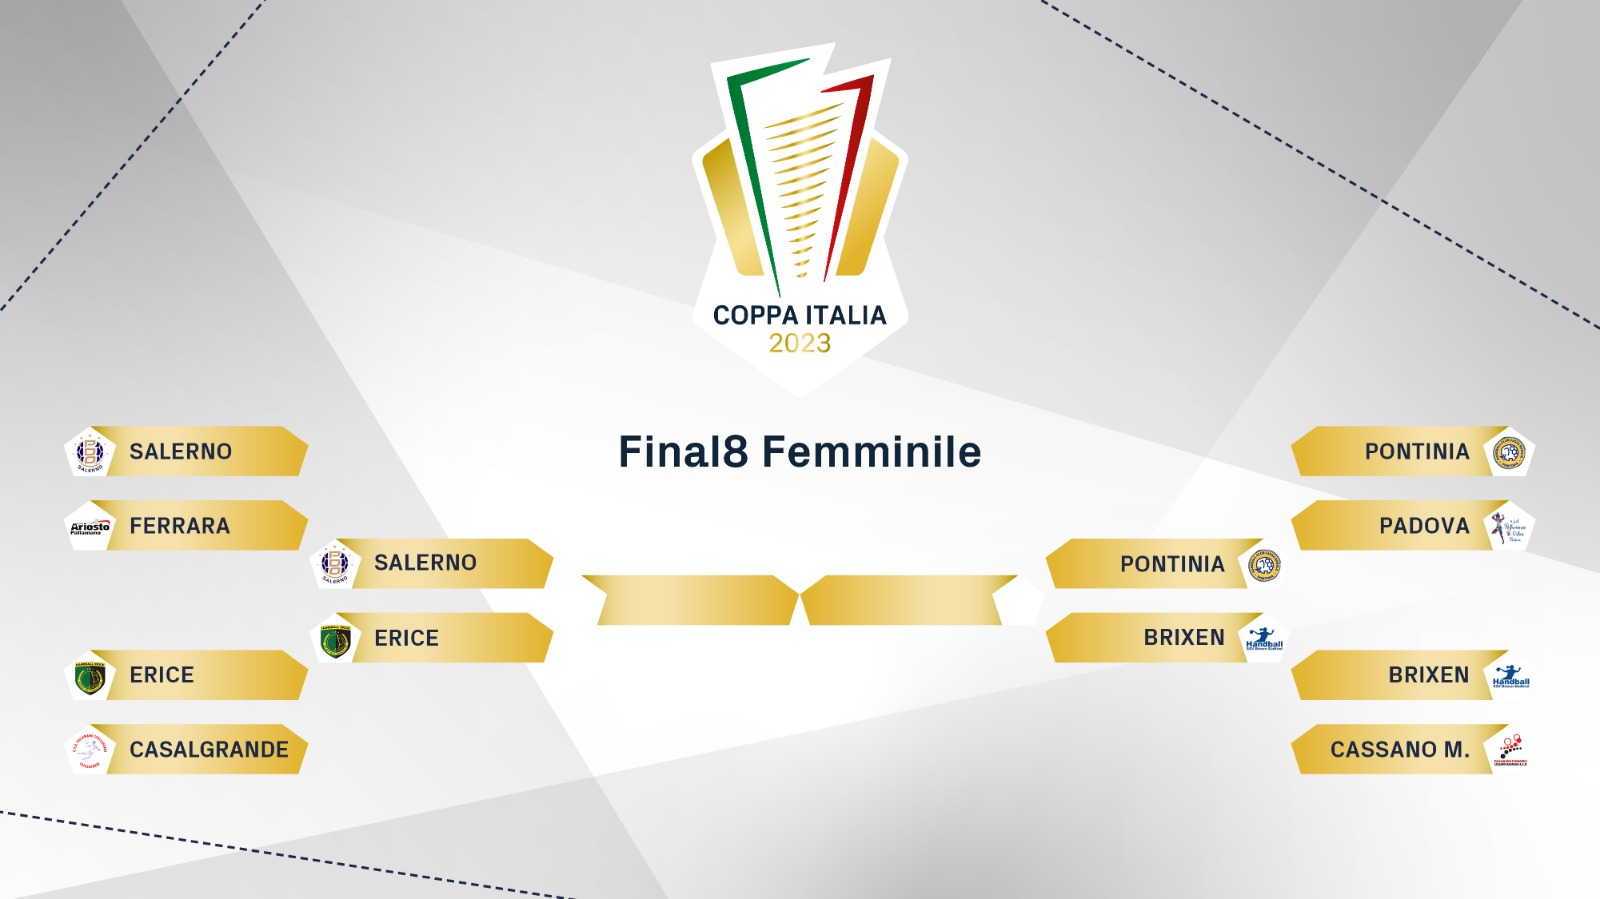 FIGH Coppa Italia 2023 tabellone F4